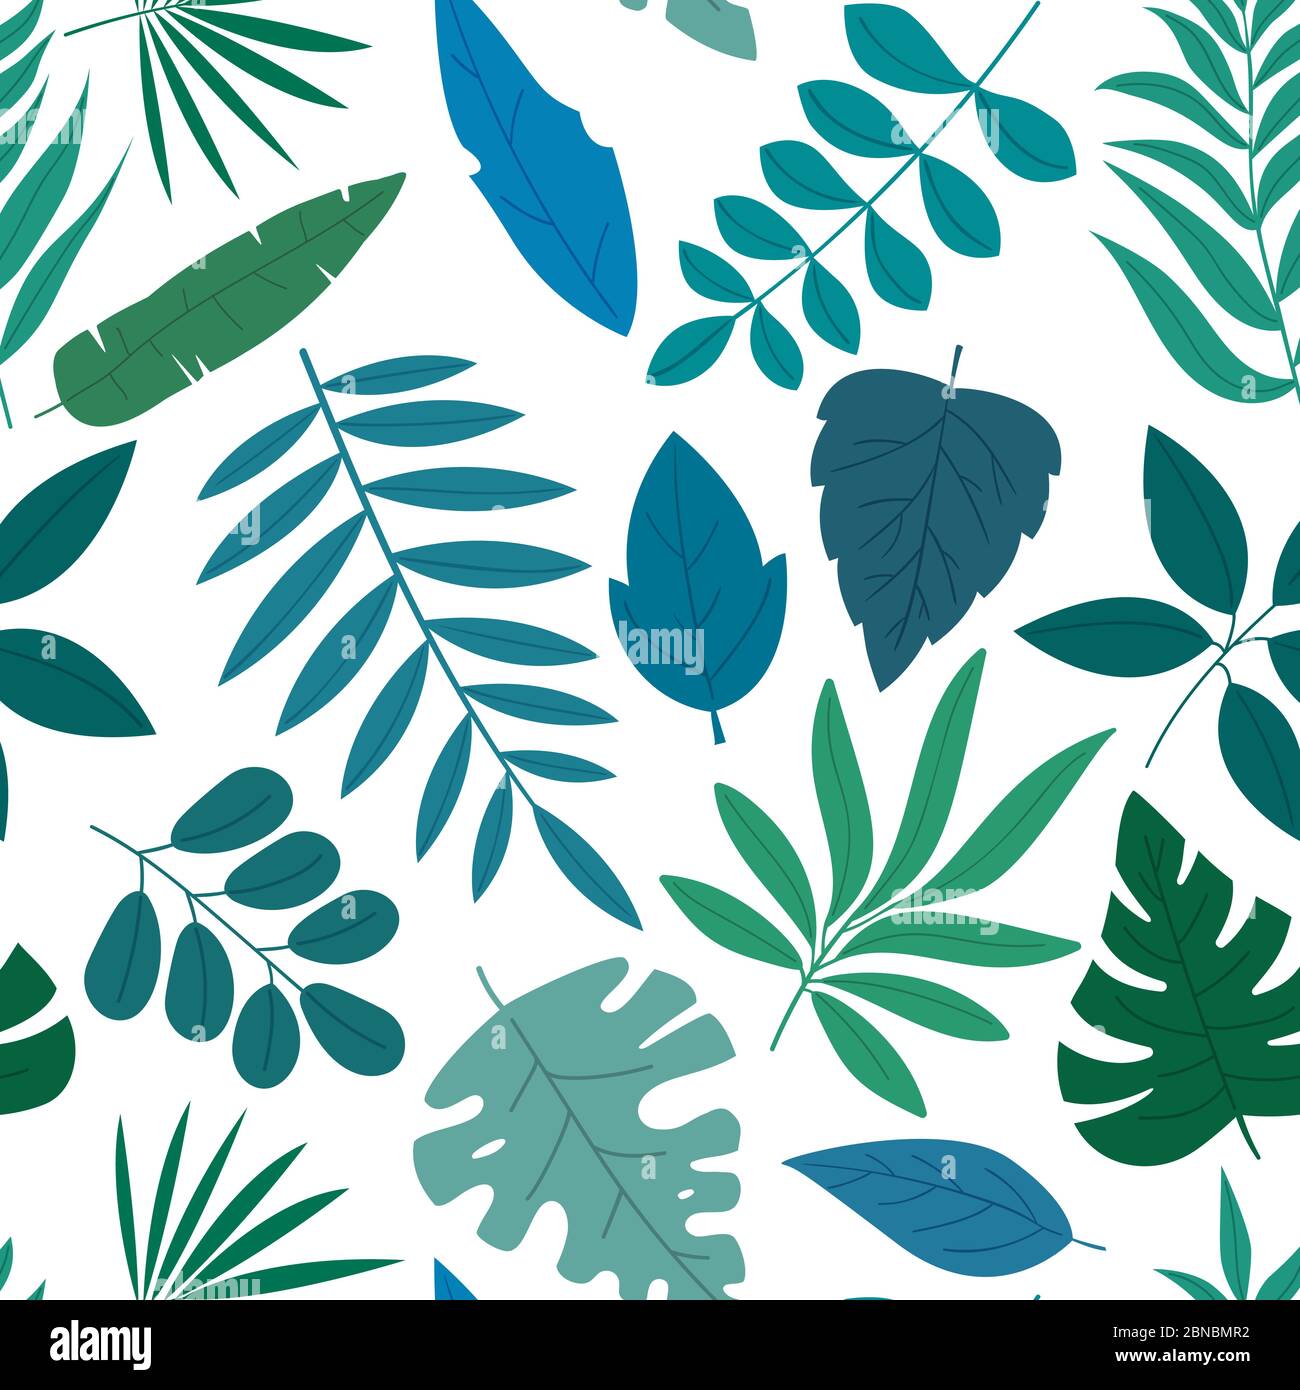 Nahtlose Muster-Set aus vielen verschiedenen blauen und grünen tropischen exotischen Blättern, Pflanzen und Früchten auf weißem Hintergrund. Sammlung von abgeschlossen und ich Stock Vektor